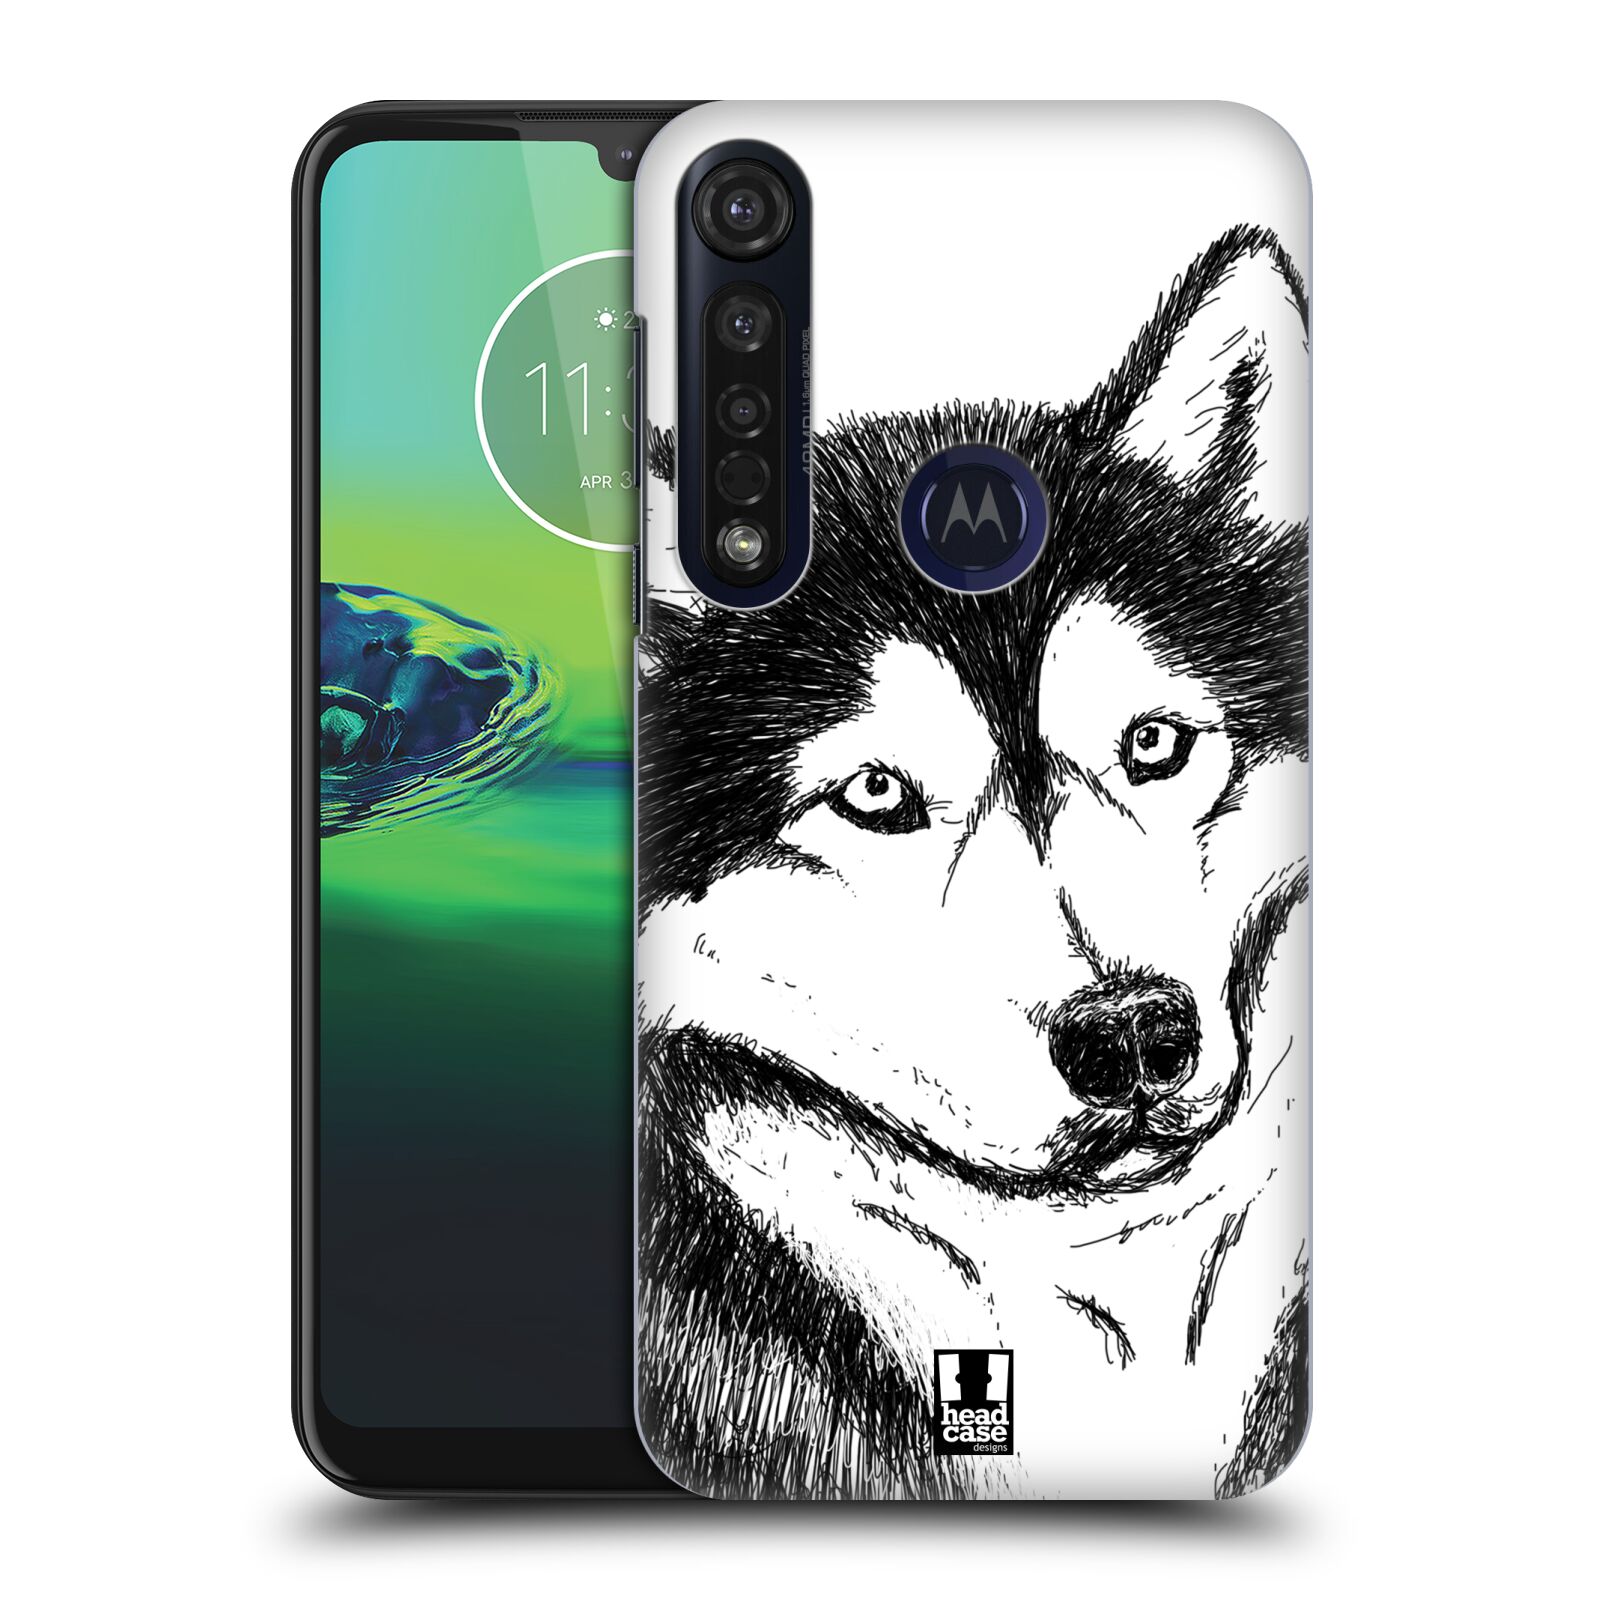 Pouzdro na mobil Motorola Moto G8 PLUS - HEAD CASE - vzor Kreslená zvířátka černá a bílá pes husky